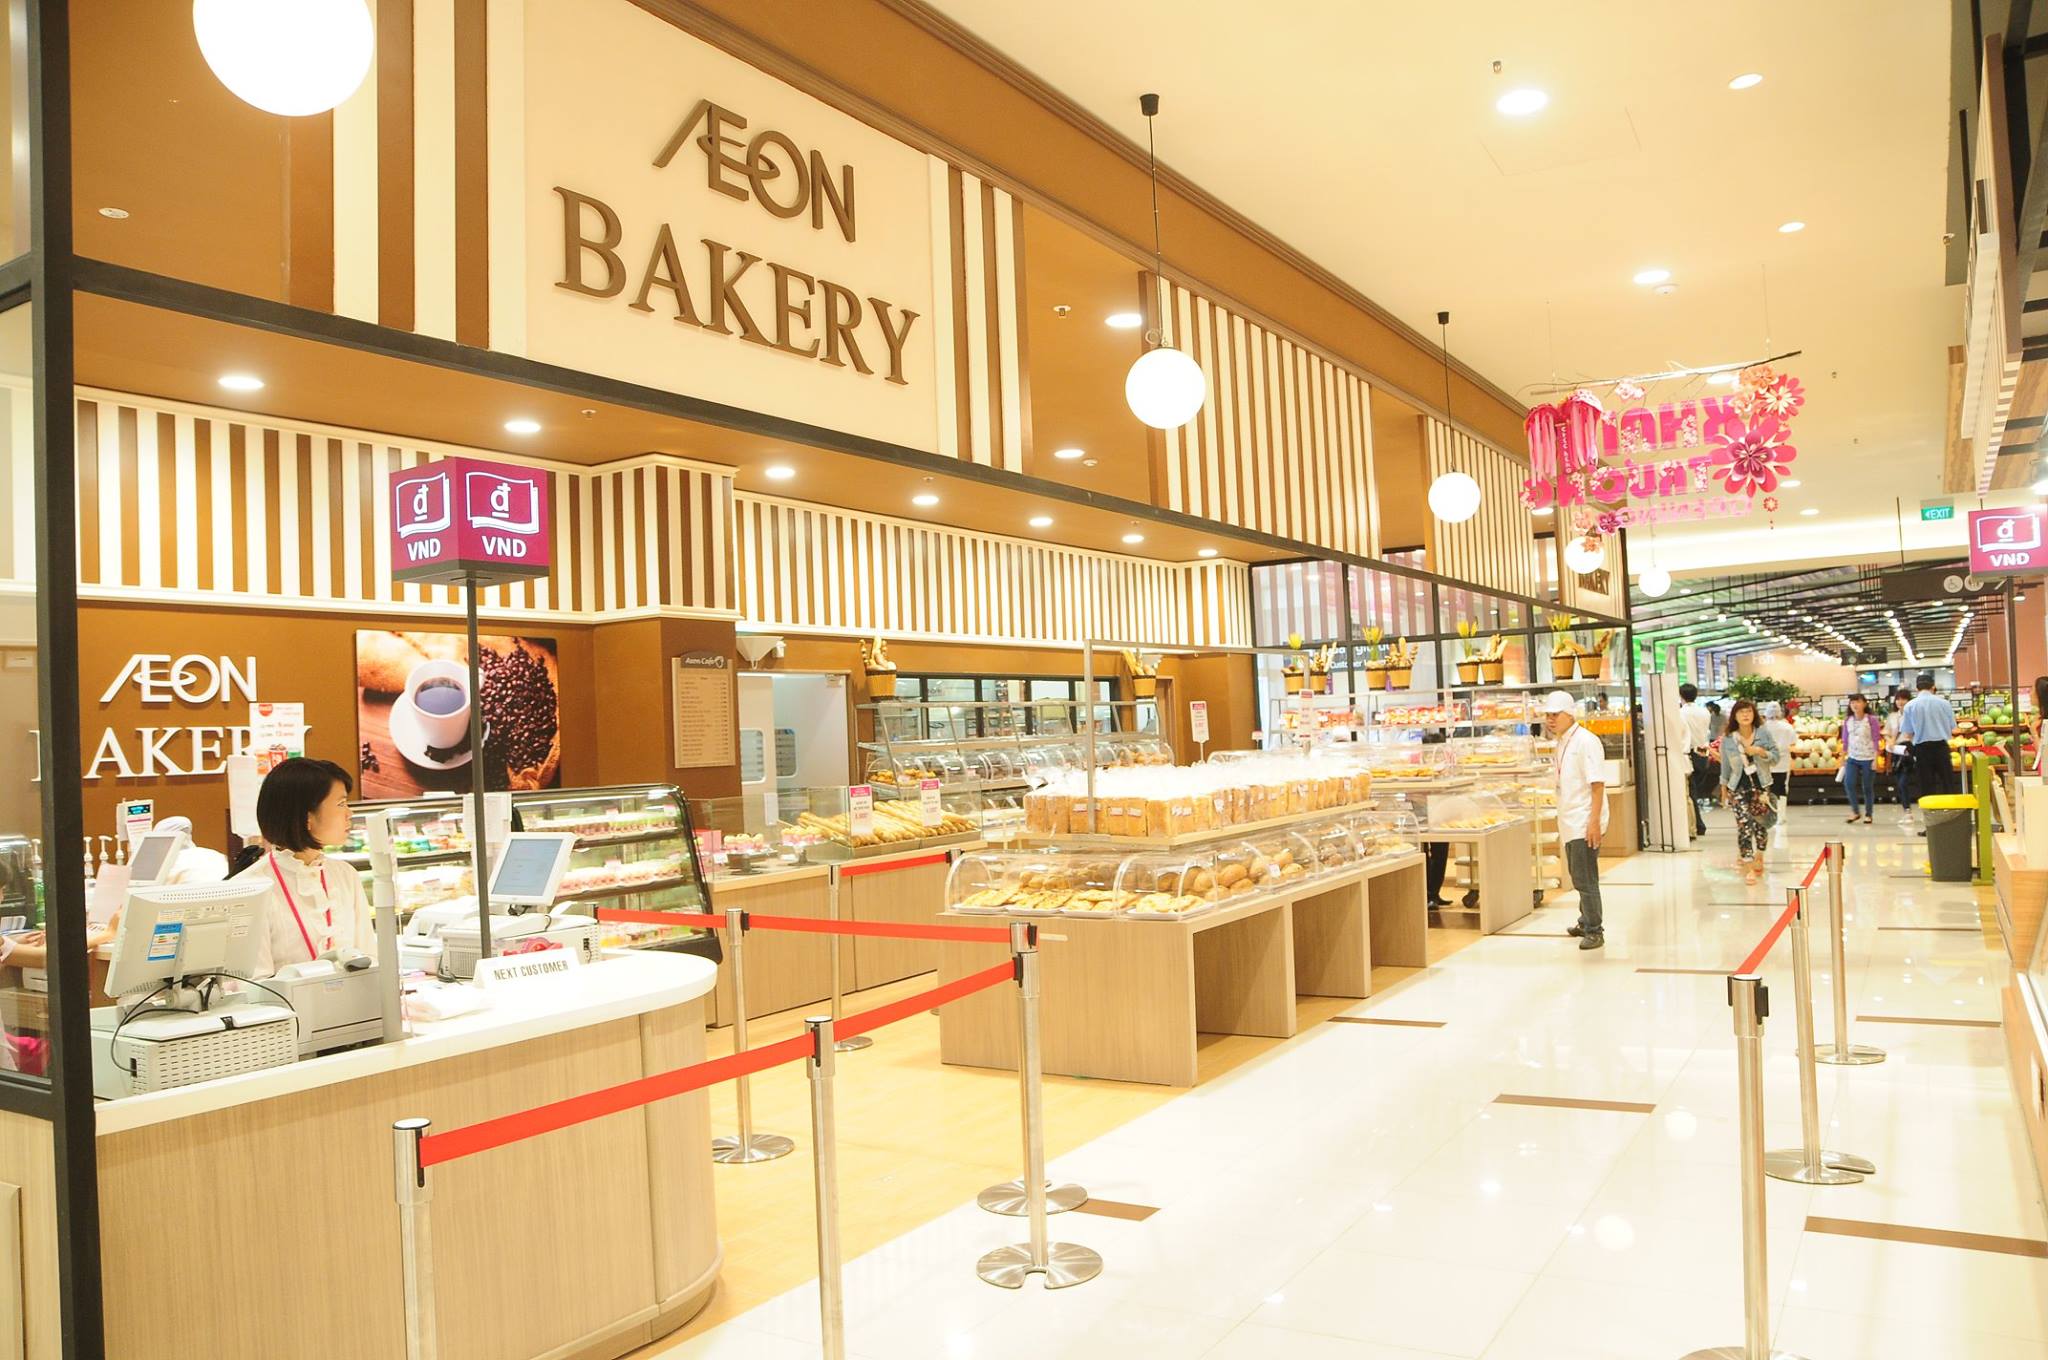 Quầy bánh ngọt tại khu vực ẩm thực của AEON trưng bày đa dạng các sản phẩm từ mặn đến ngọt